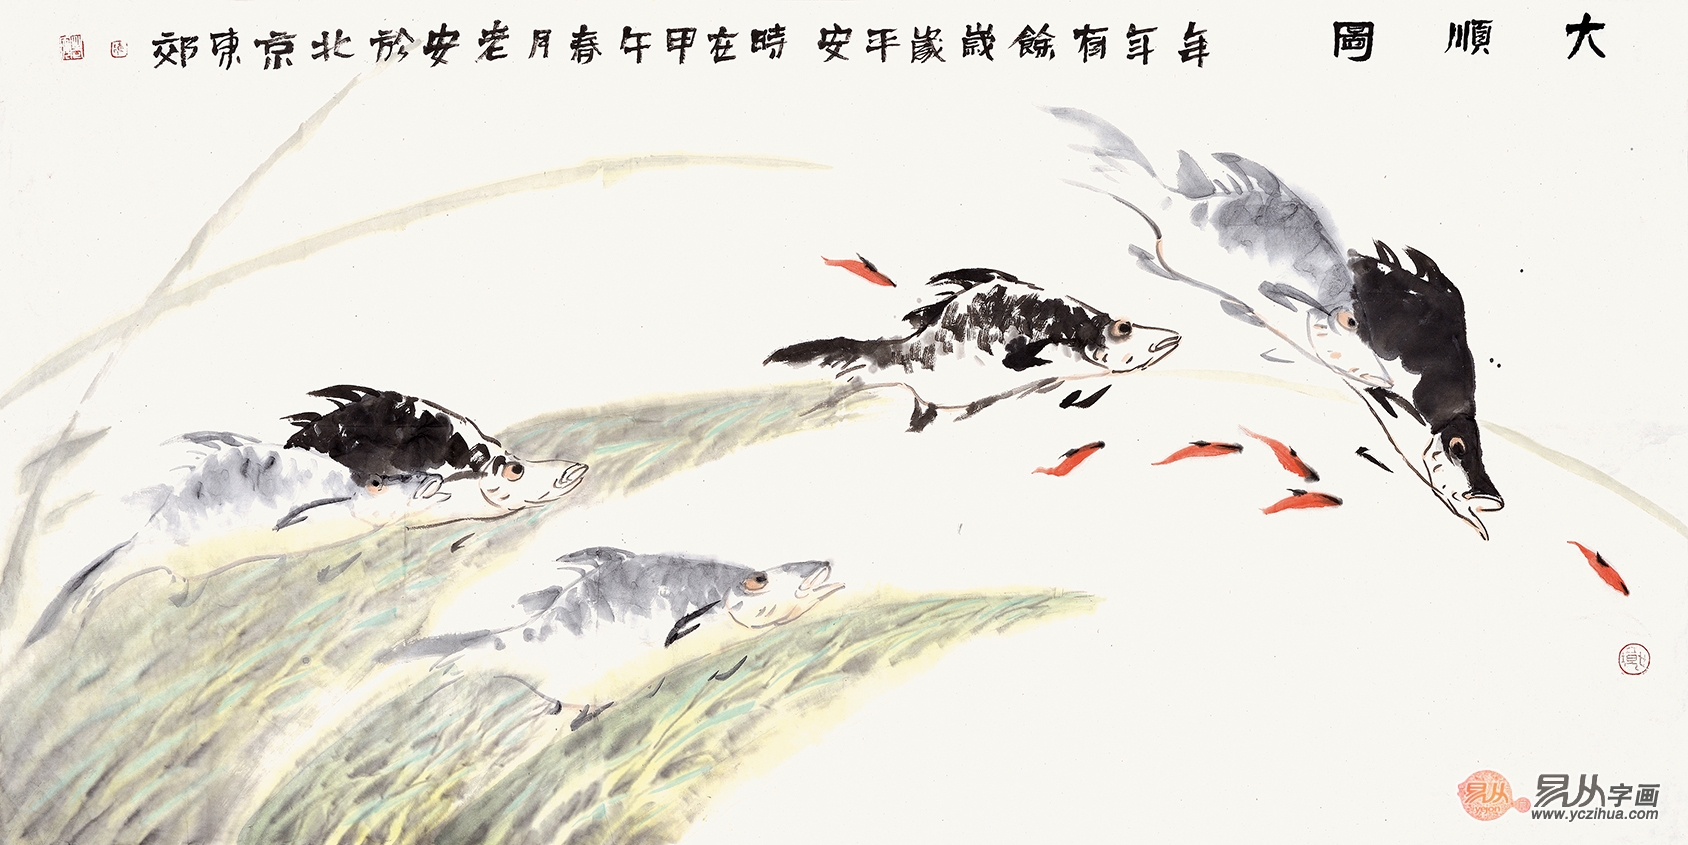 陈儒义四尺横幅花鸟画作品鱼《大顺图》